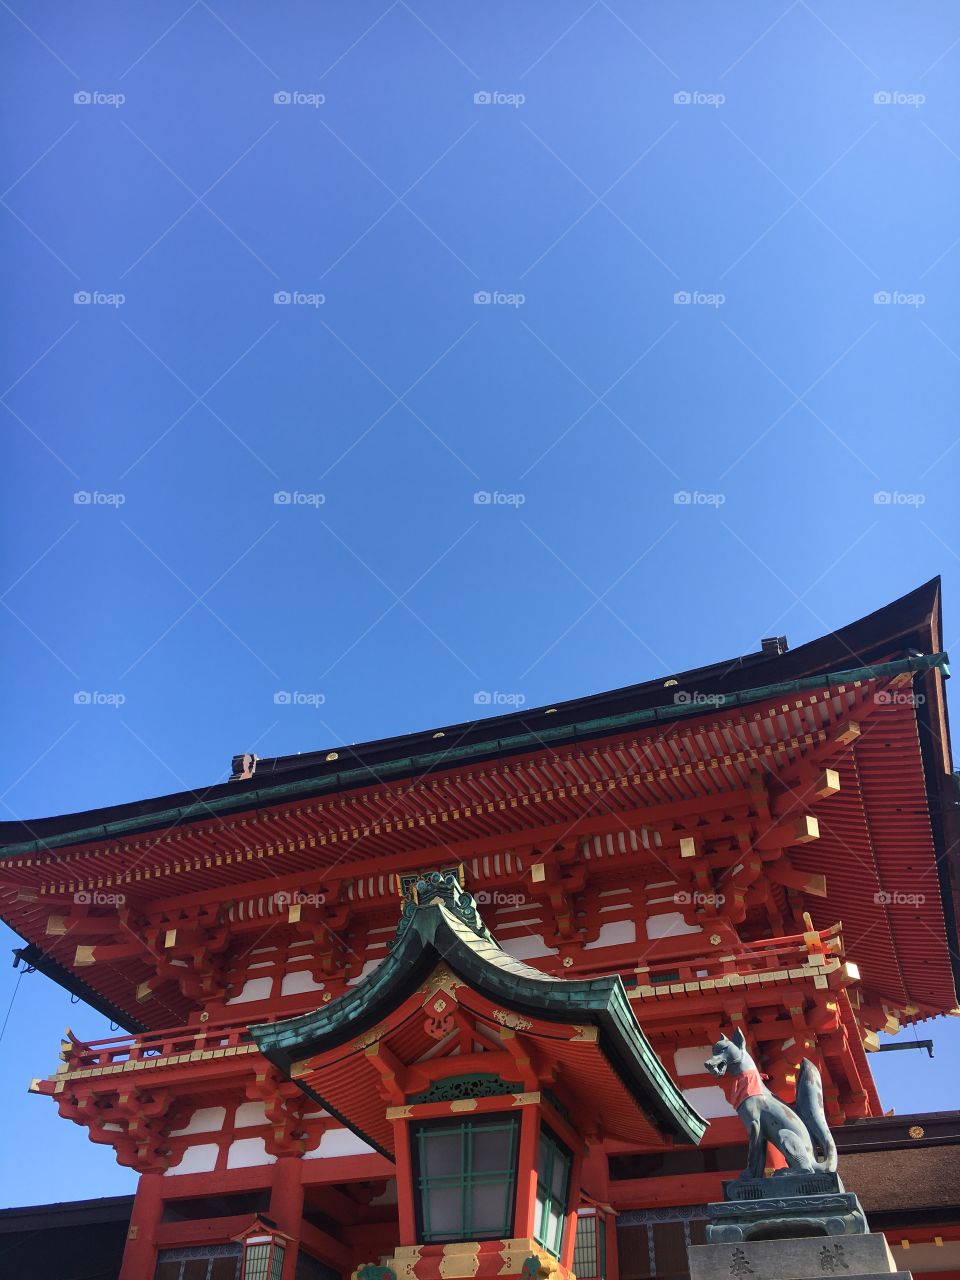 Main temple at Fushimi Inari